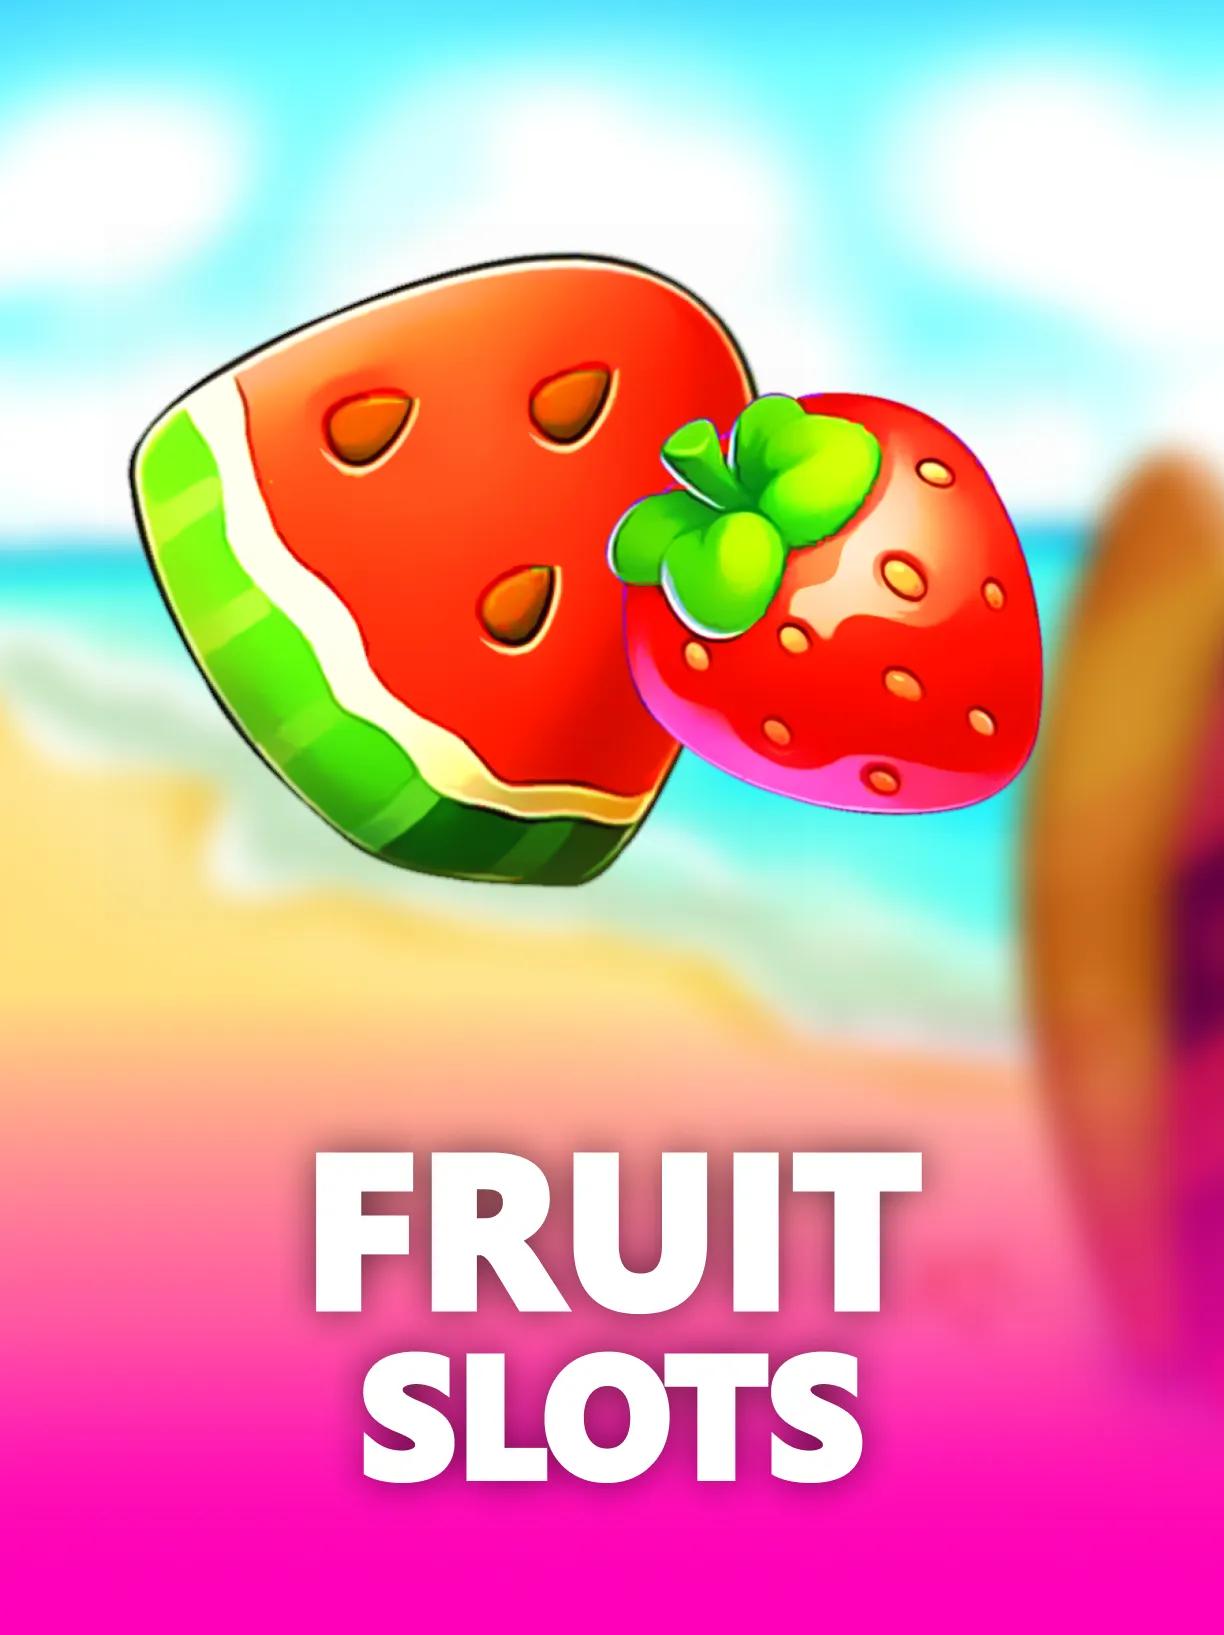 ug_Fruit_Slots_square.webp